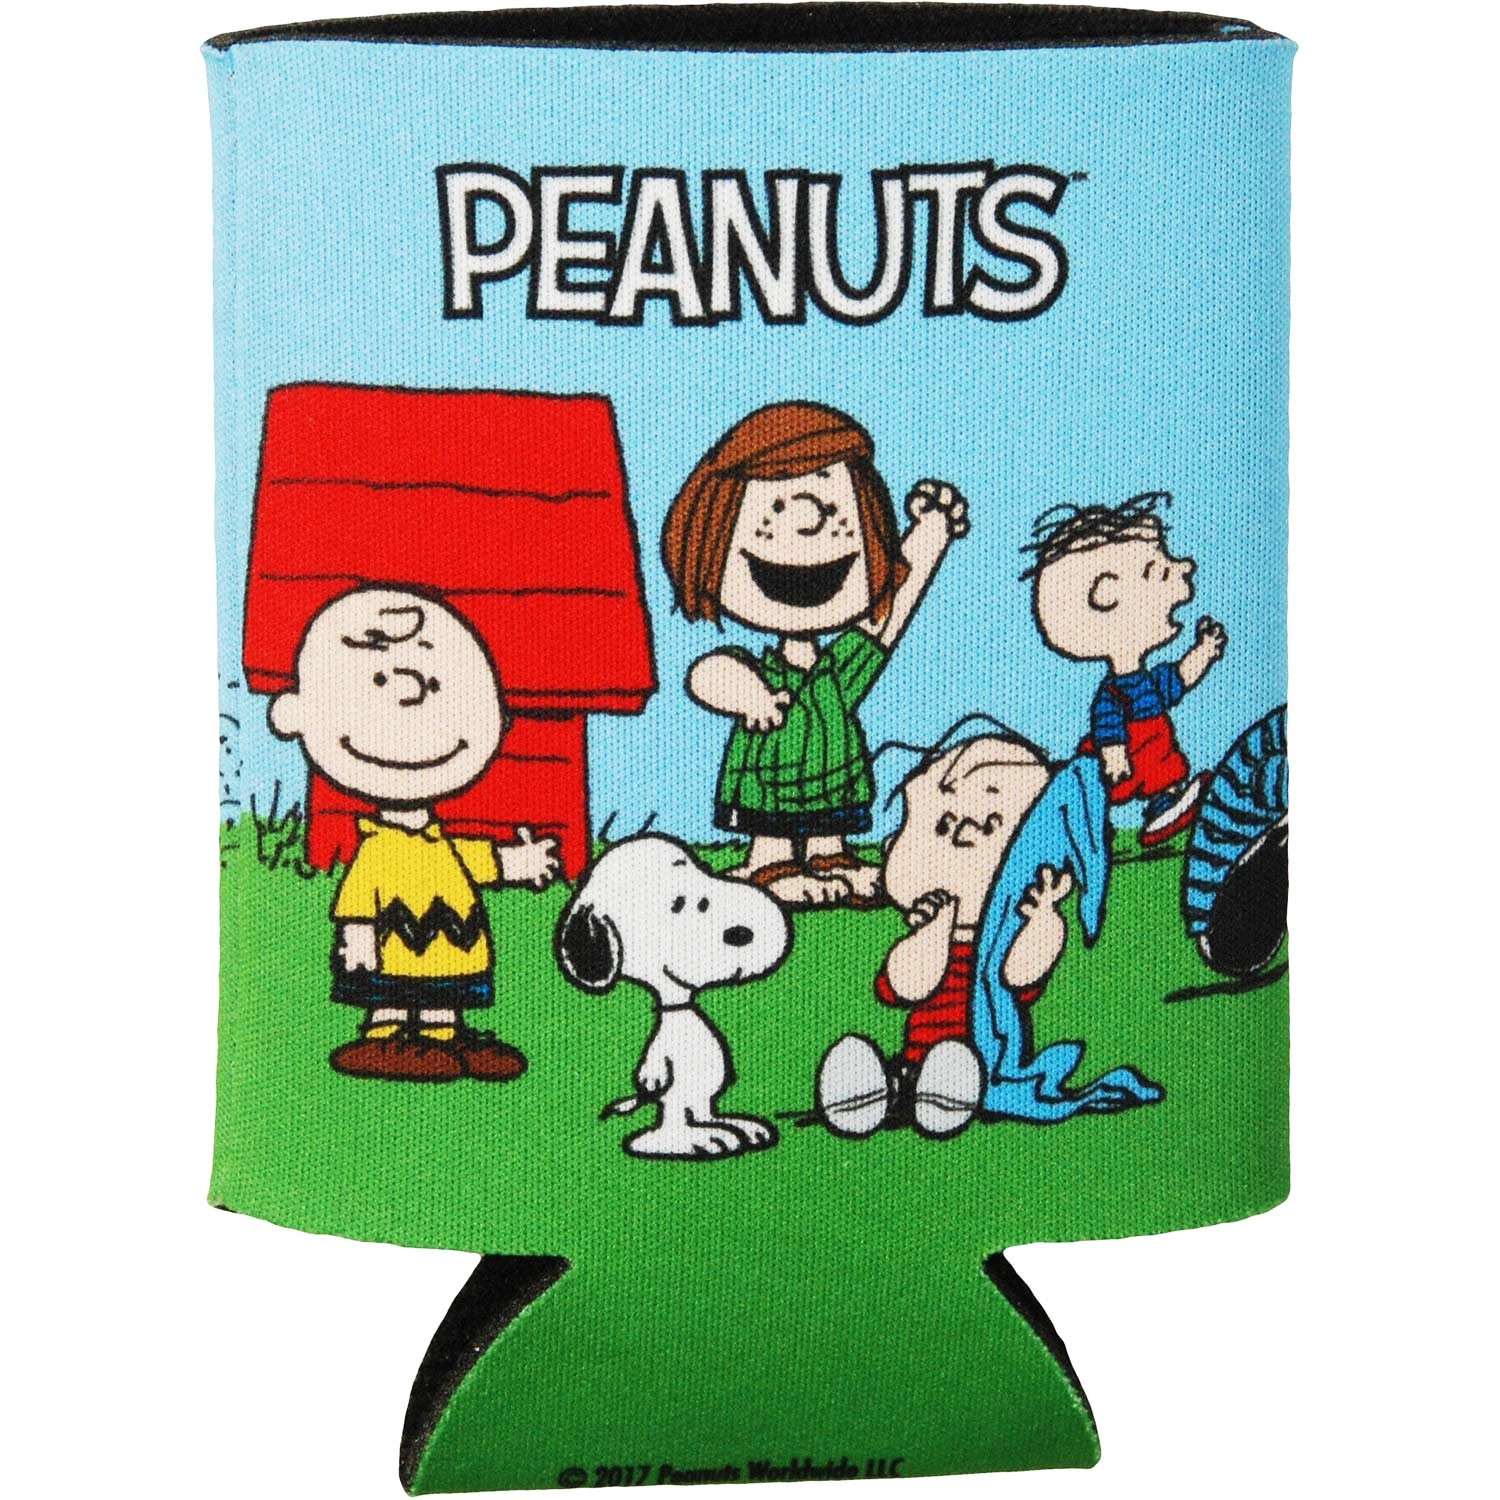 Peanuts Cast Can Cooler